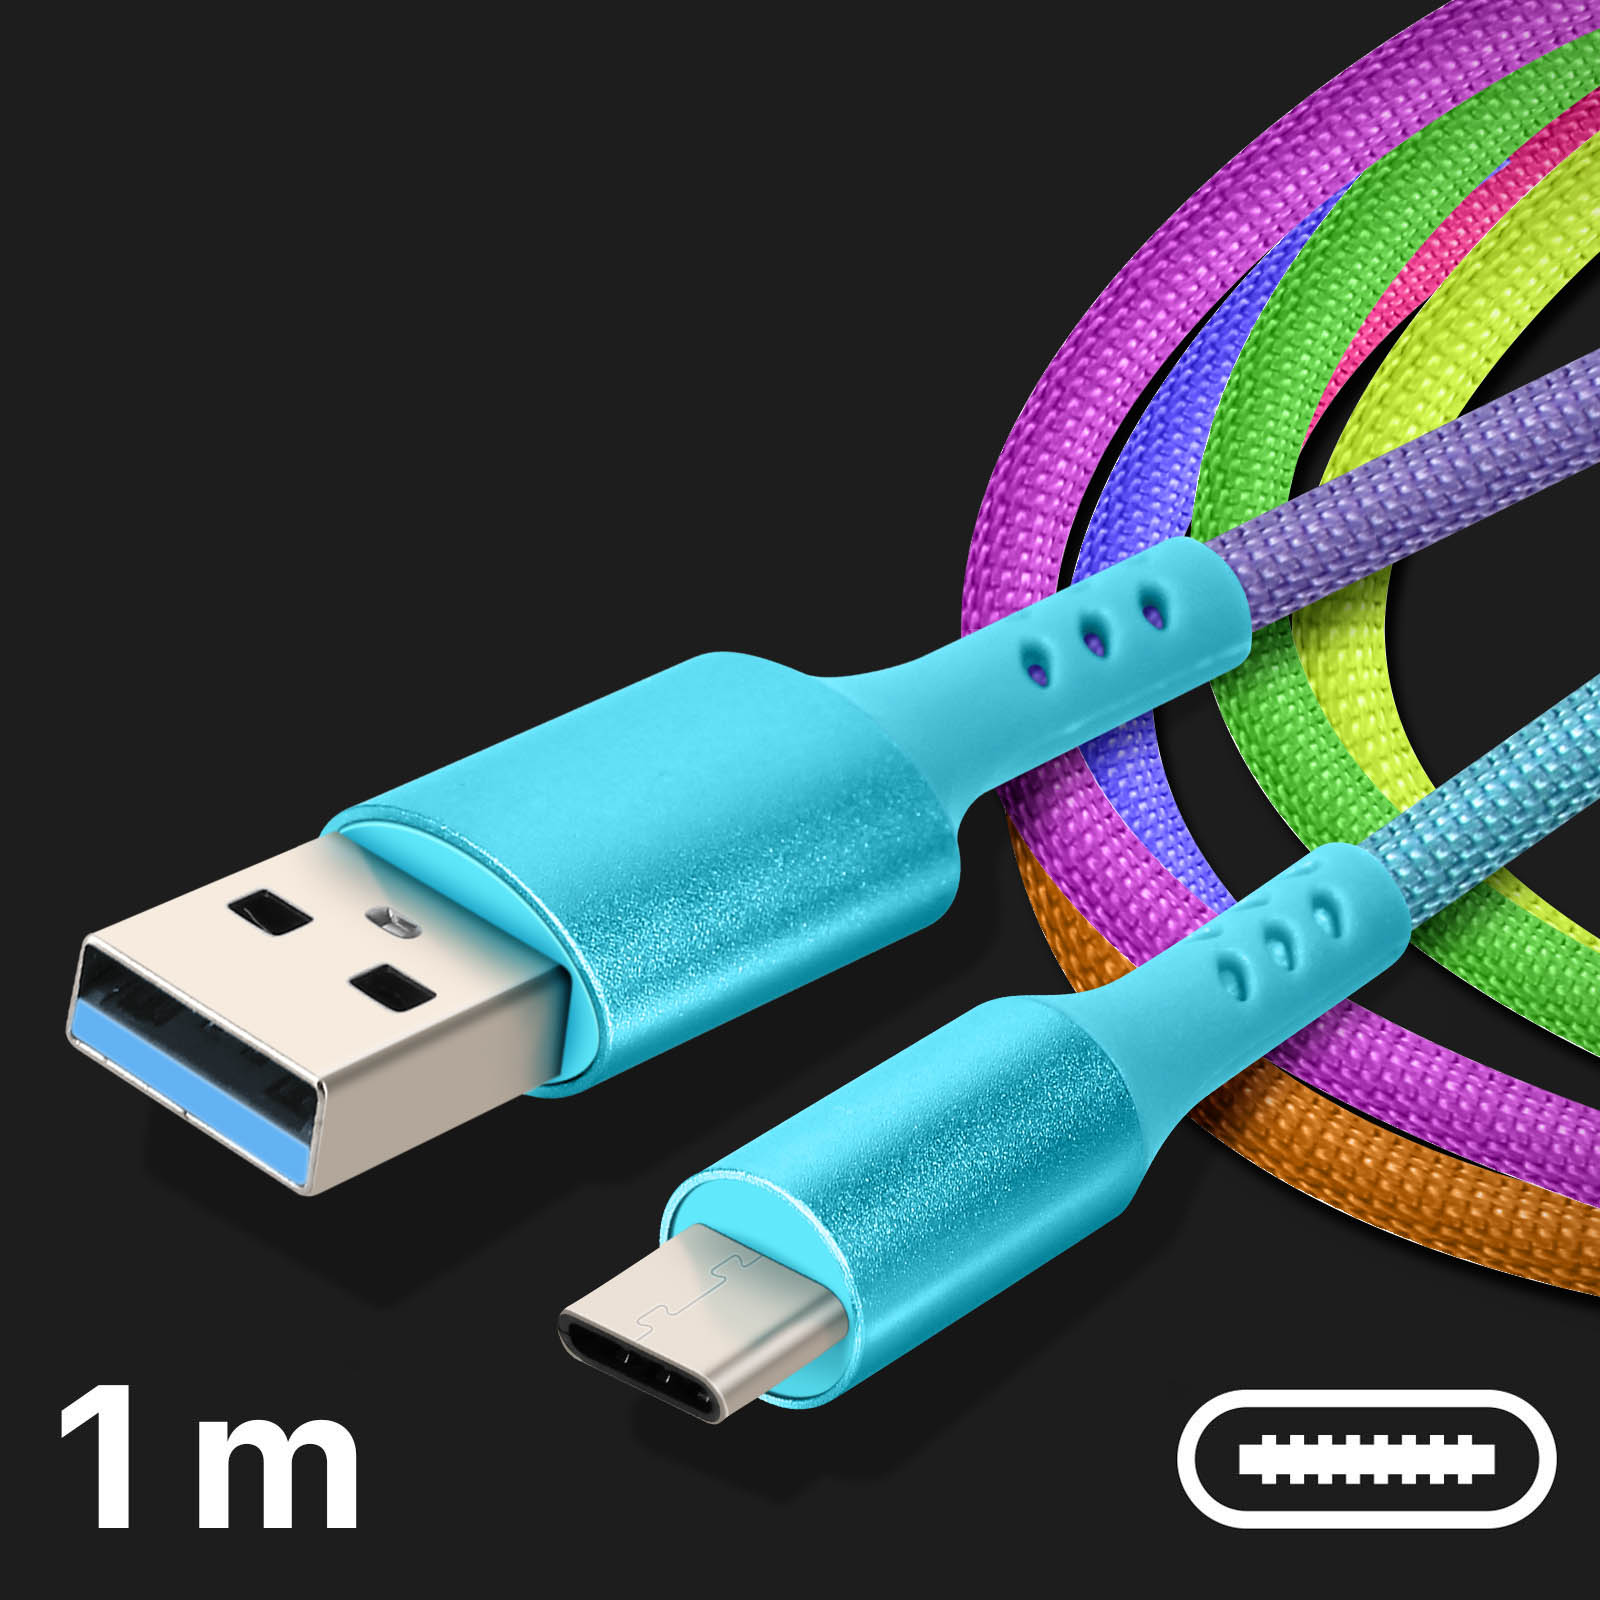 Câble Charge et Synchronisation embout USB Type C 1m, Rainbow - Multicolore  - Français